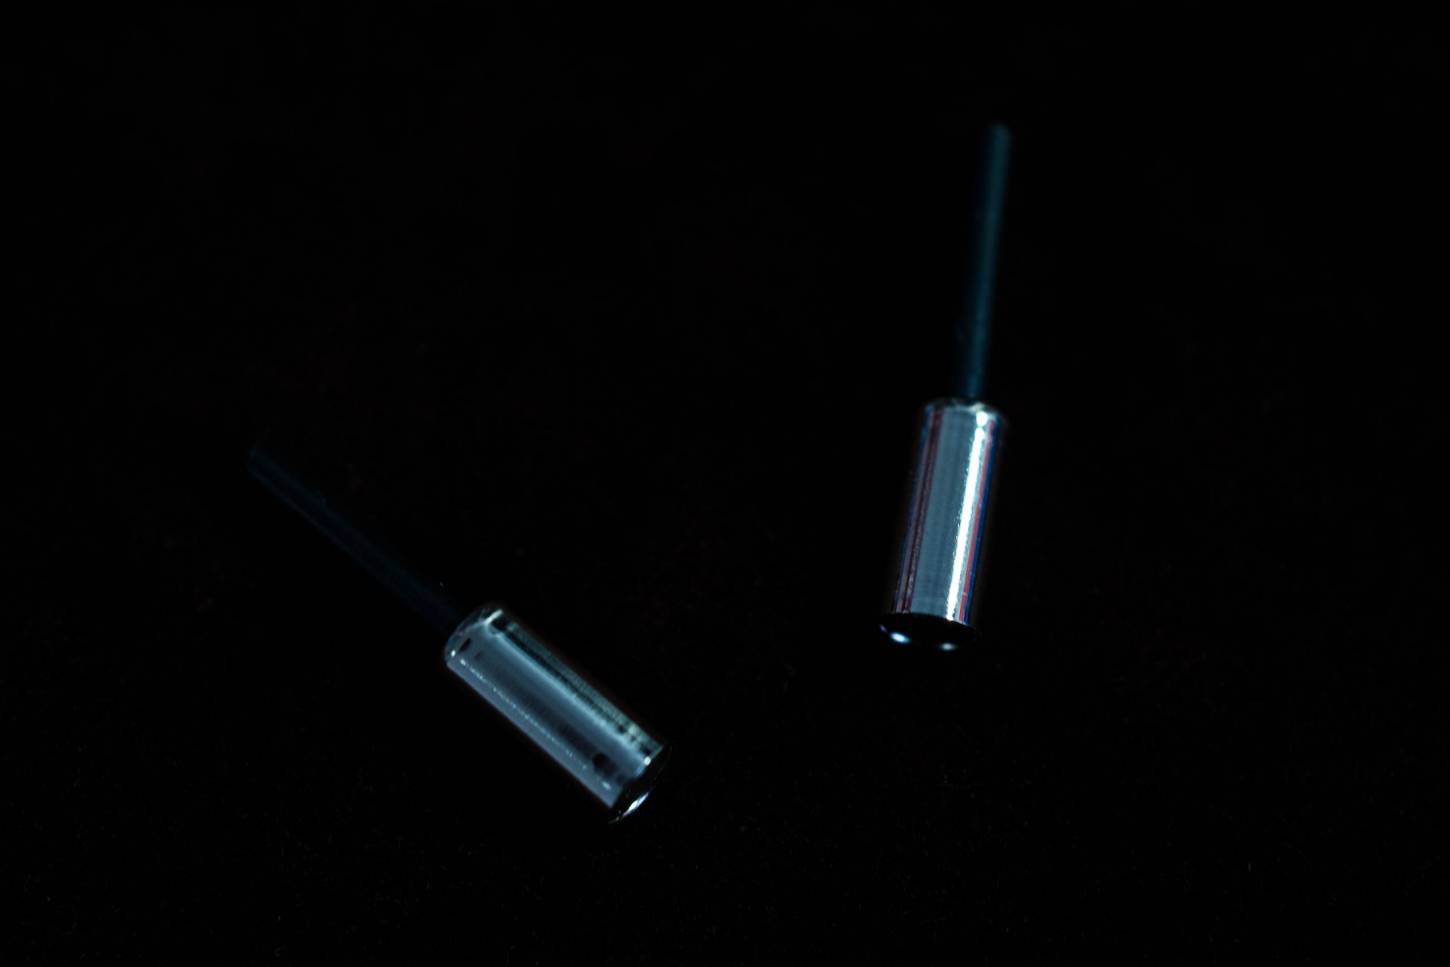 2x embouts en laiton Shimano avec doublure pour câble de frein de 5 mm Ø gaine extérieure en chrome argent